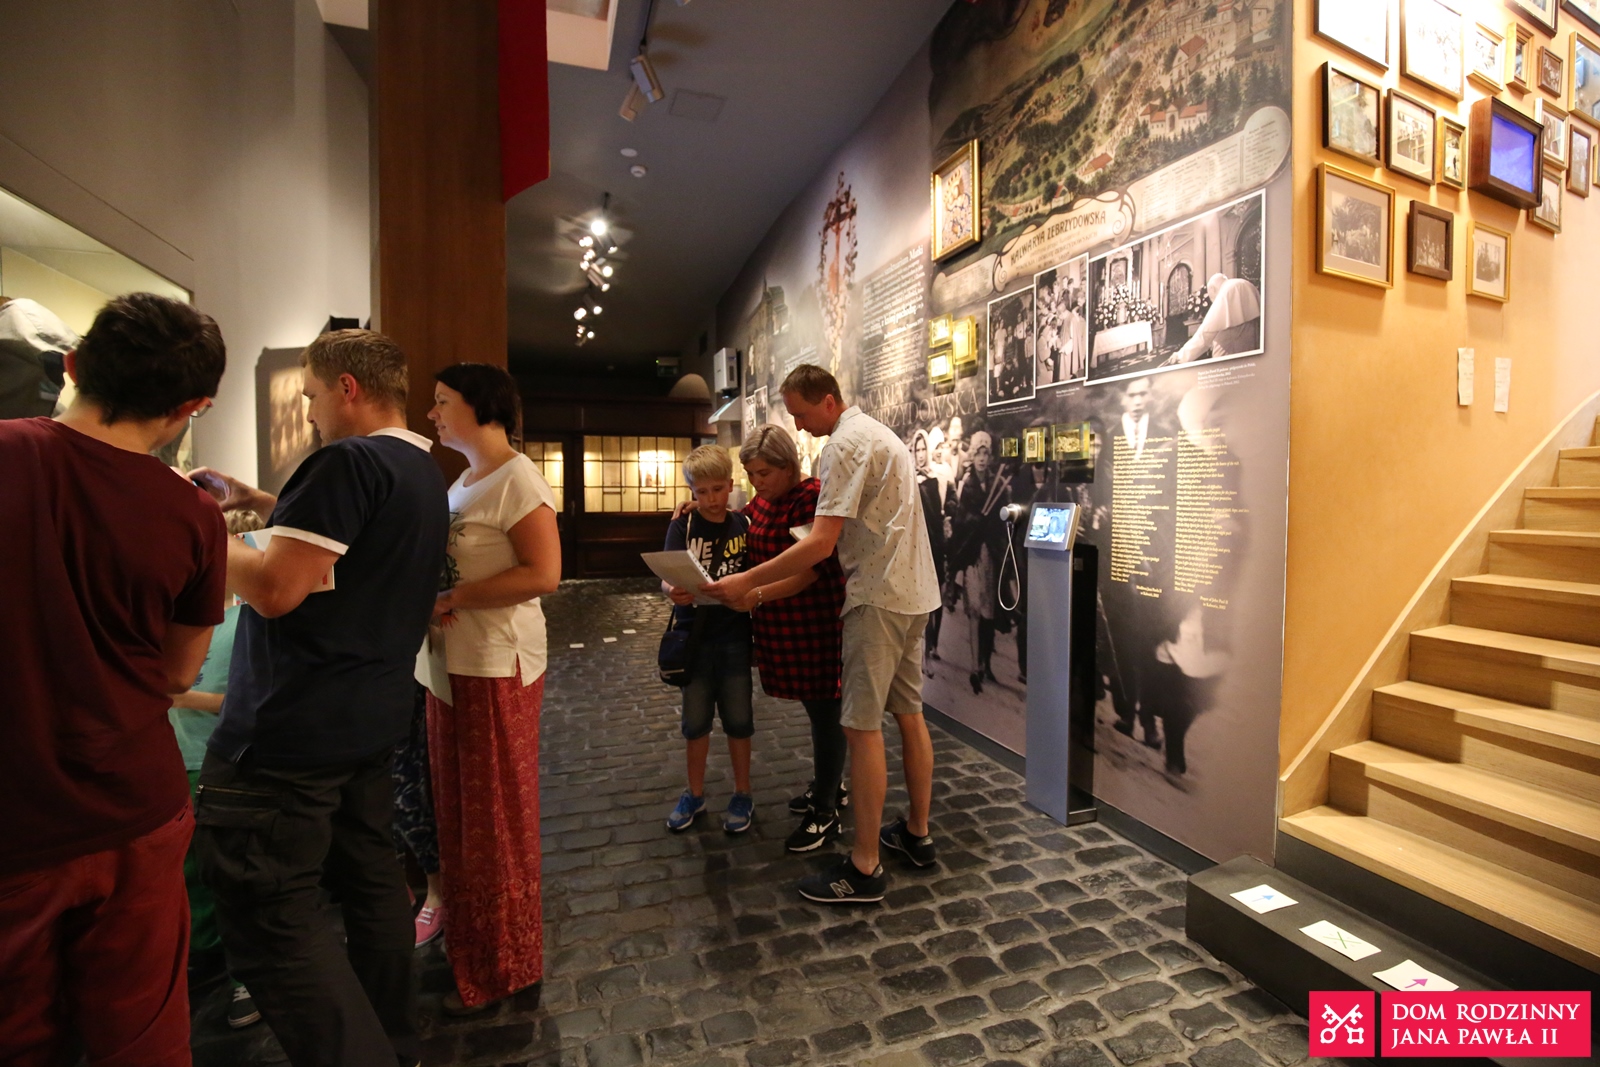 Muzeum Dom Rodzinny Ojca Świętego Jana Pawła II w Wadowicach zaprasza na warsztaty podróżnicze